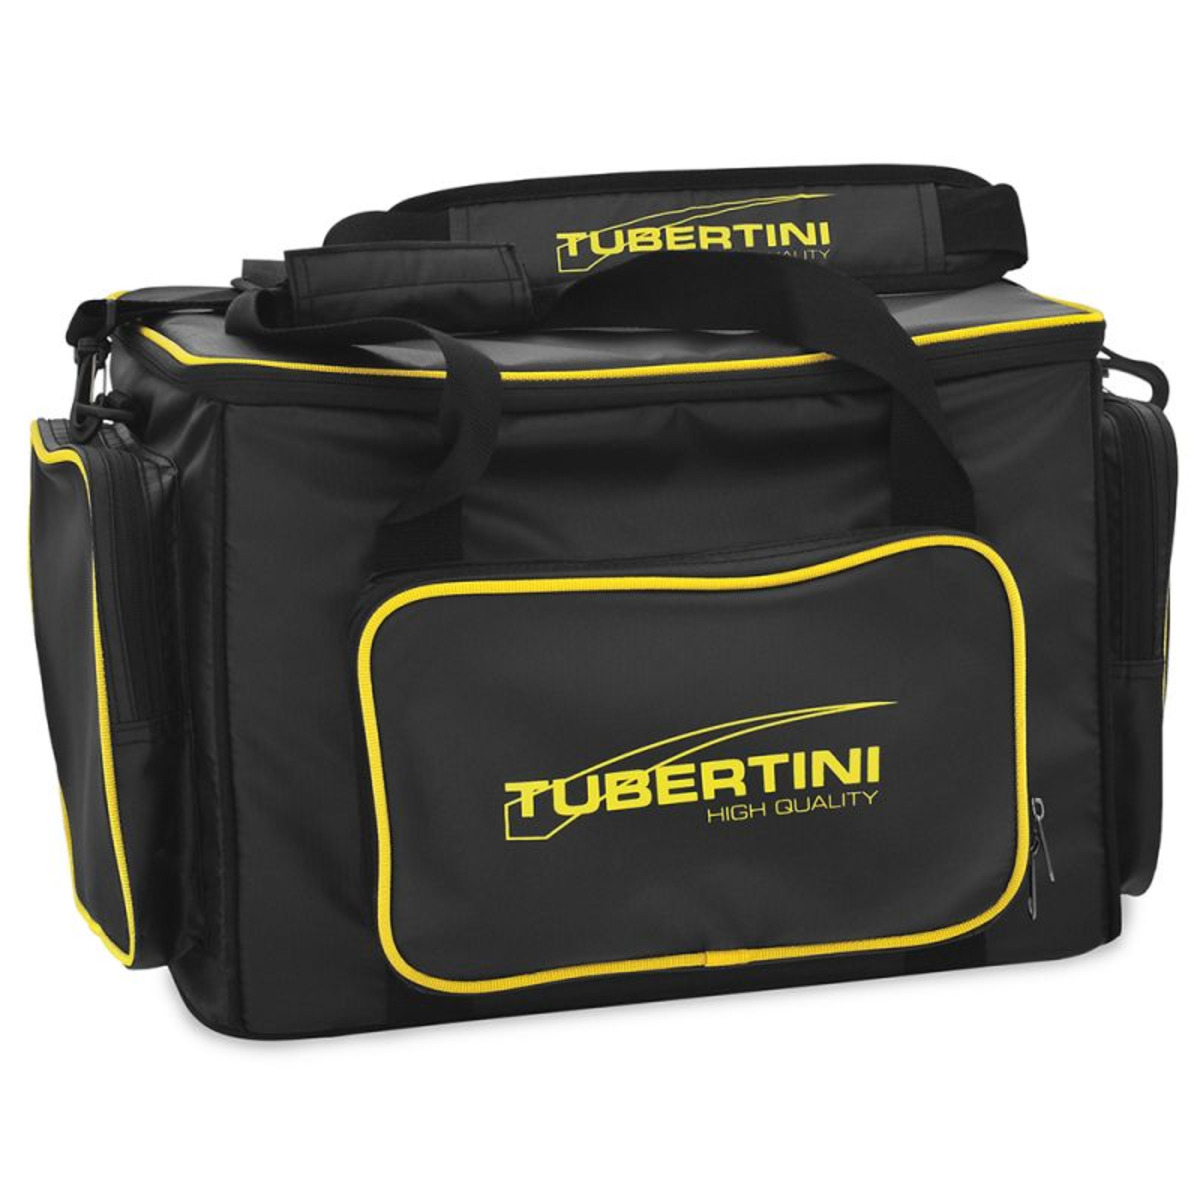 Tubertini Hard Box - Medium